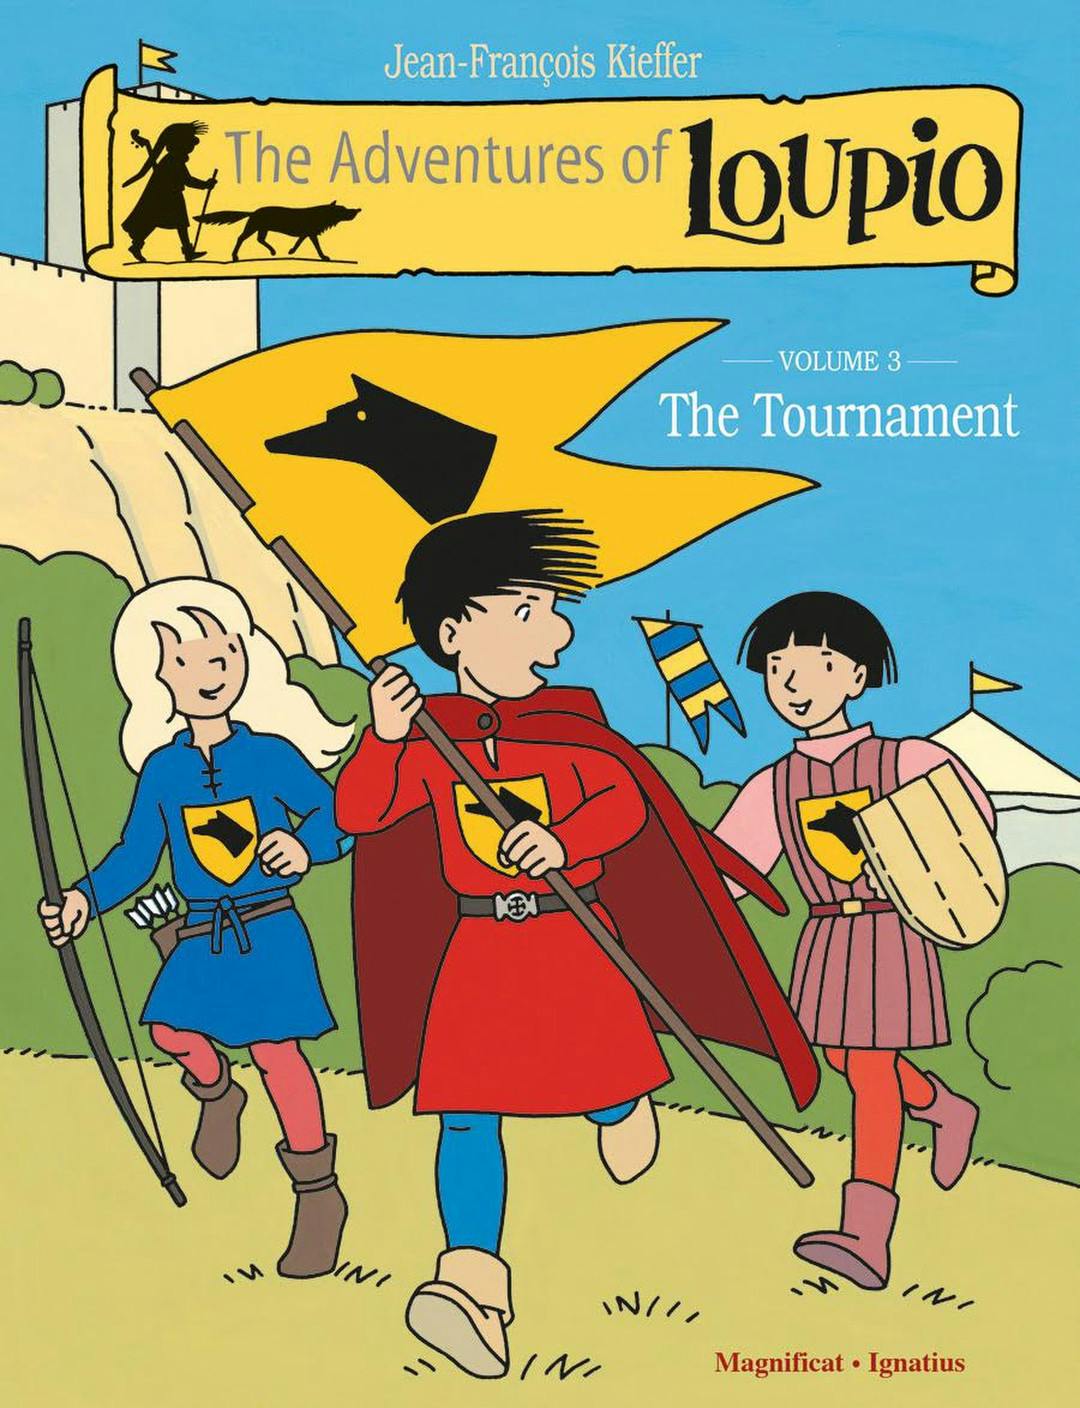 The Adventures of Loupio Volume 3